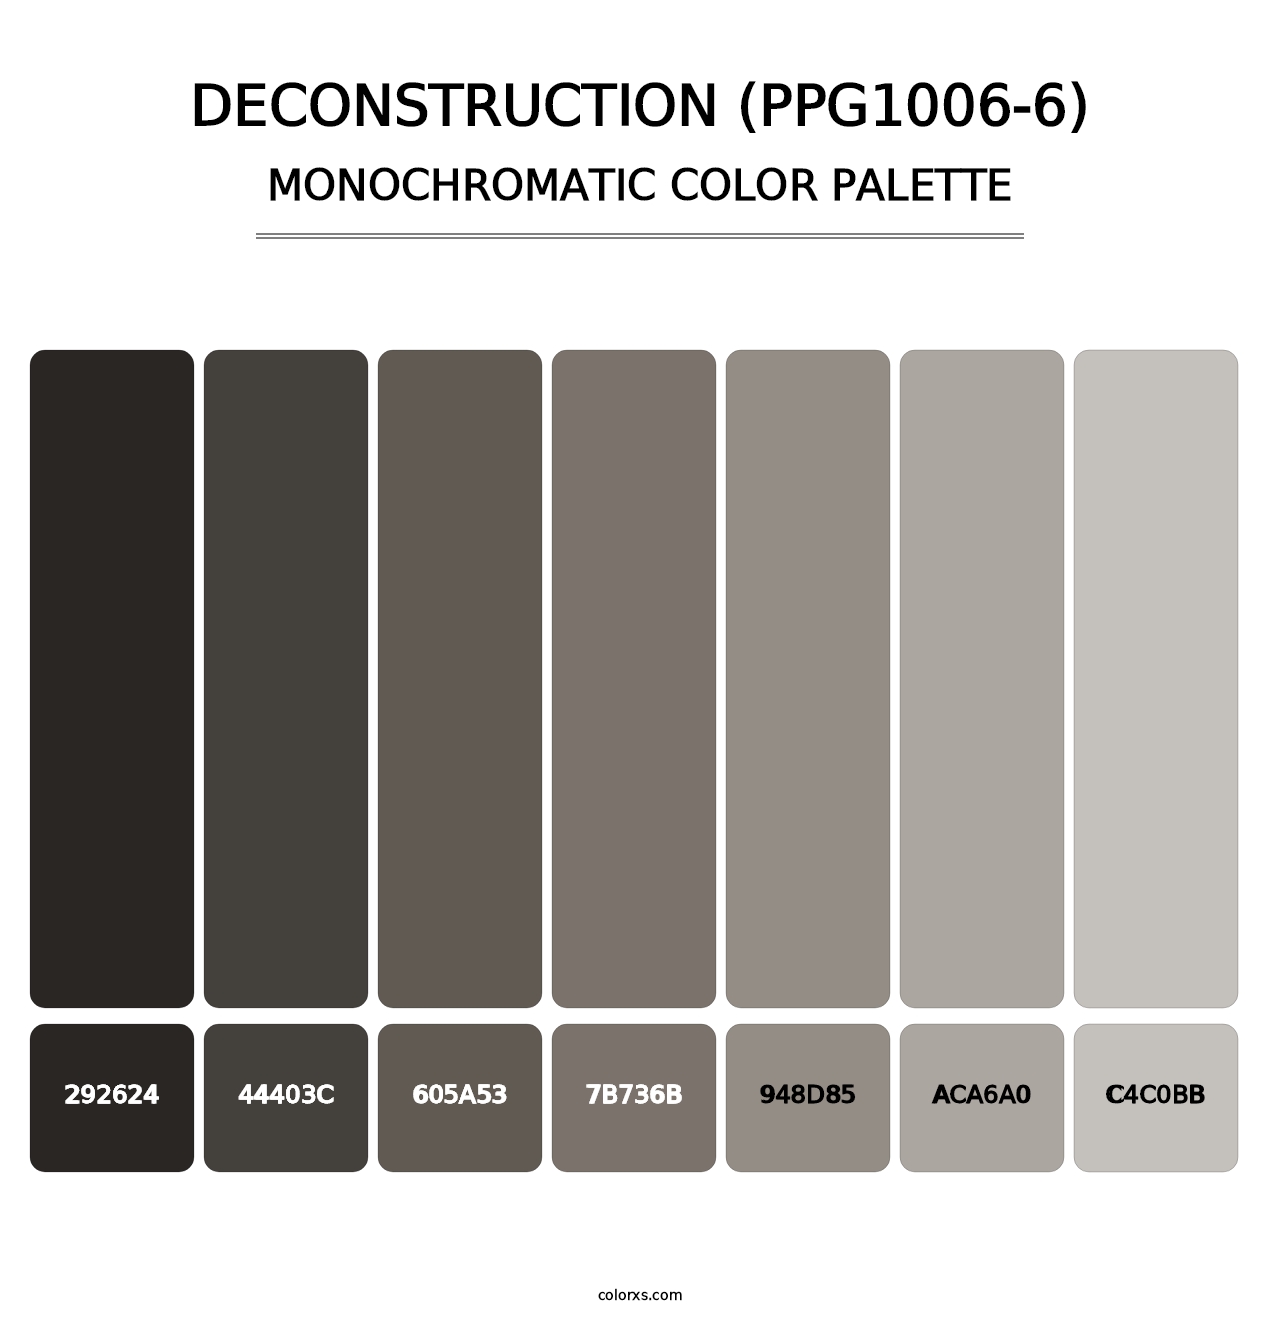 Deconstruction (PPG1006-6) - Monochromatic Color Palette